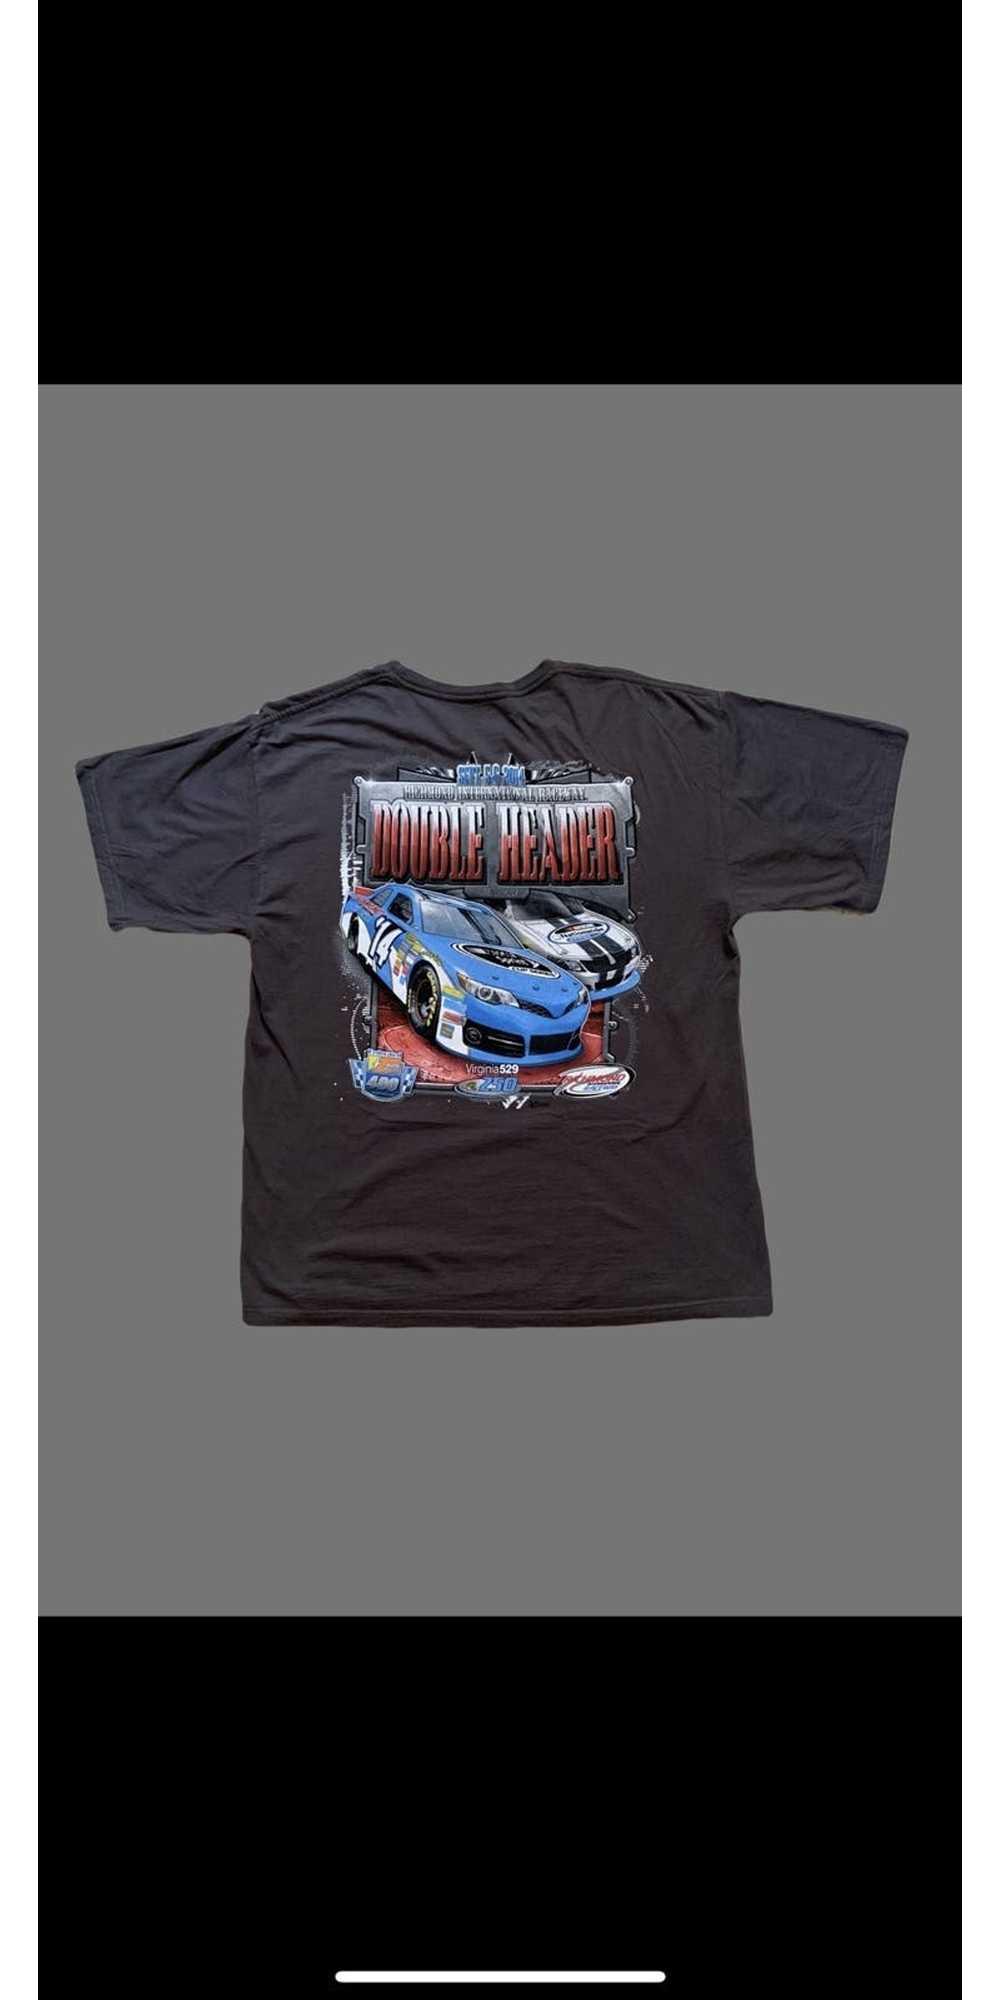 Chase Authentics × NASCAR NASCAR chase T shirt - image 4